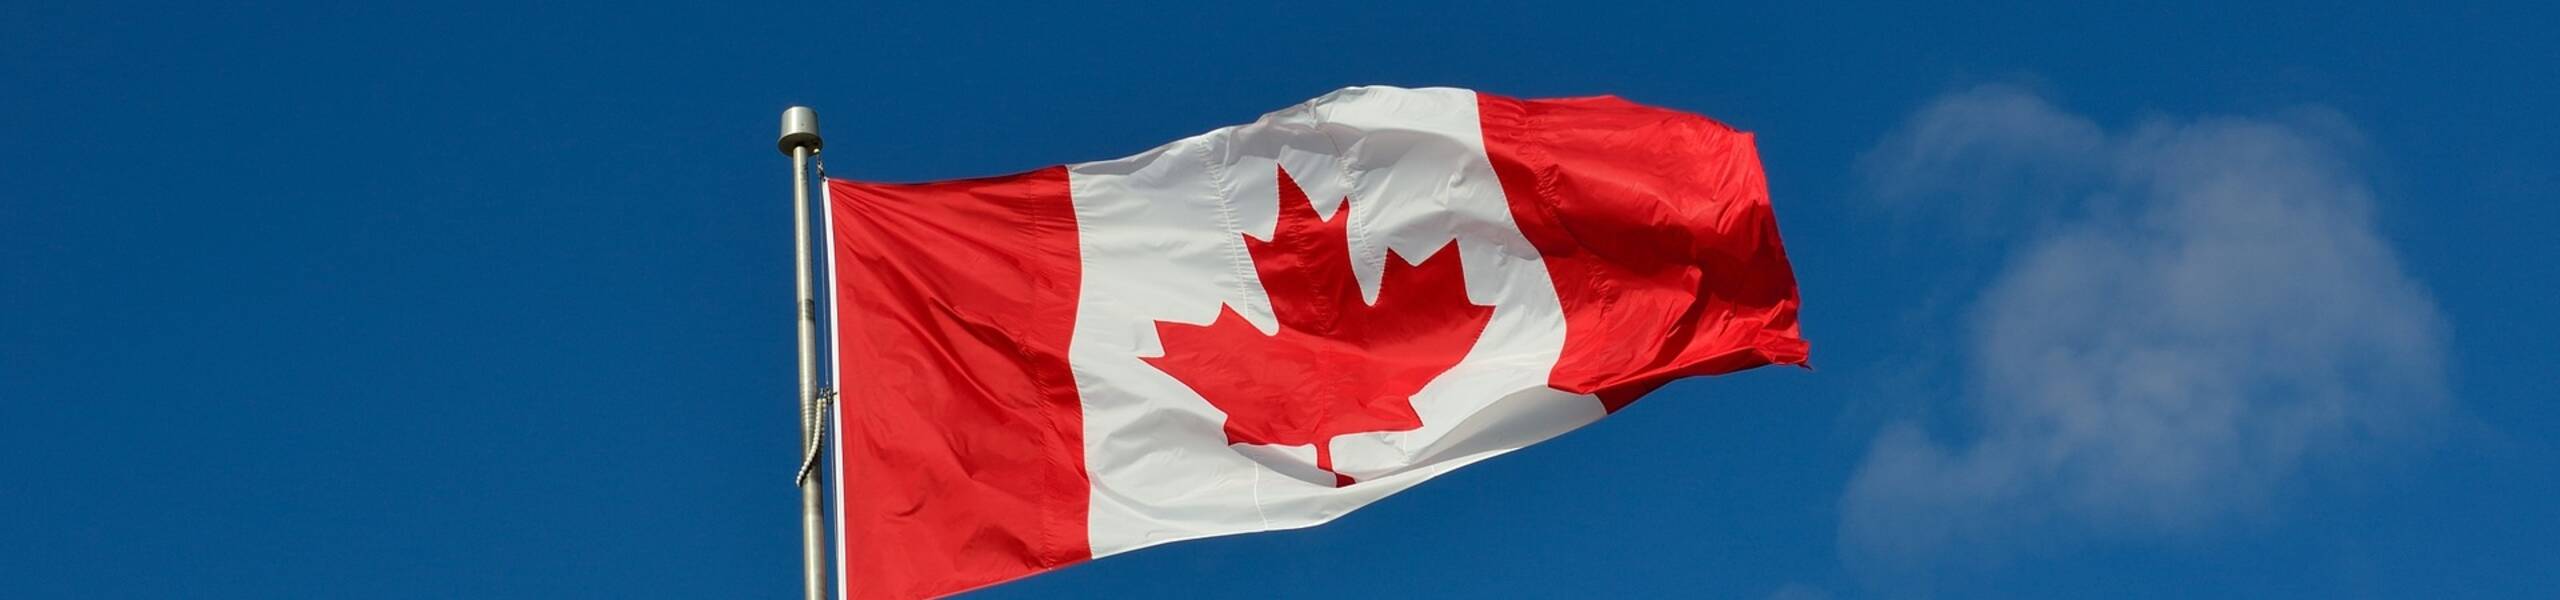 Ivey PMI ของประเทศแคนาดาแต่คืนนี้สกุลเงินแคนาดาผันผวนระยะสั้น